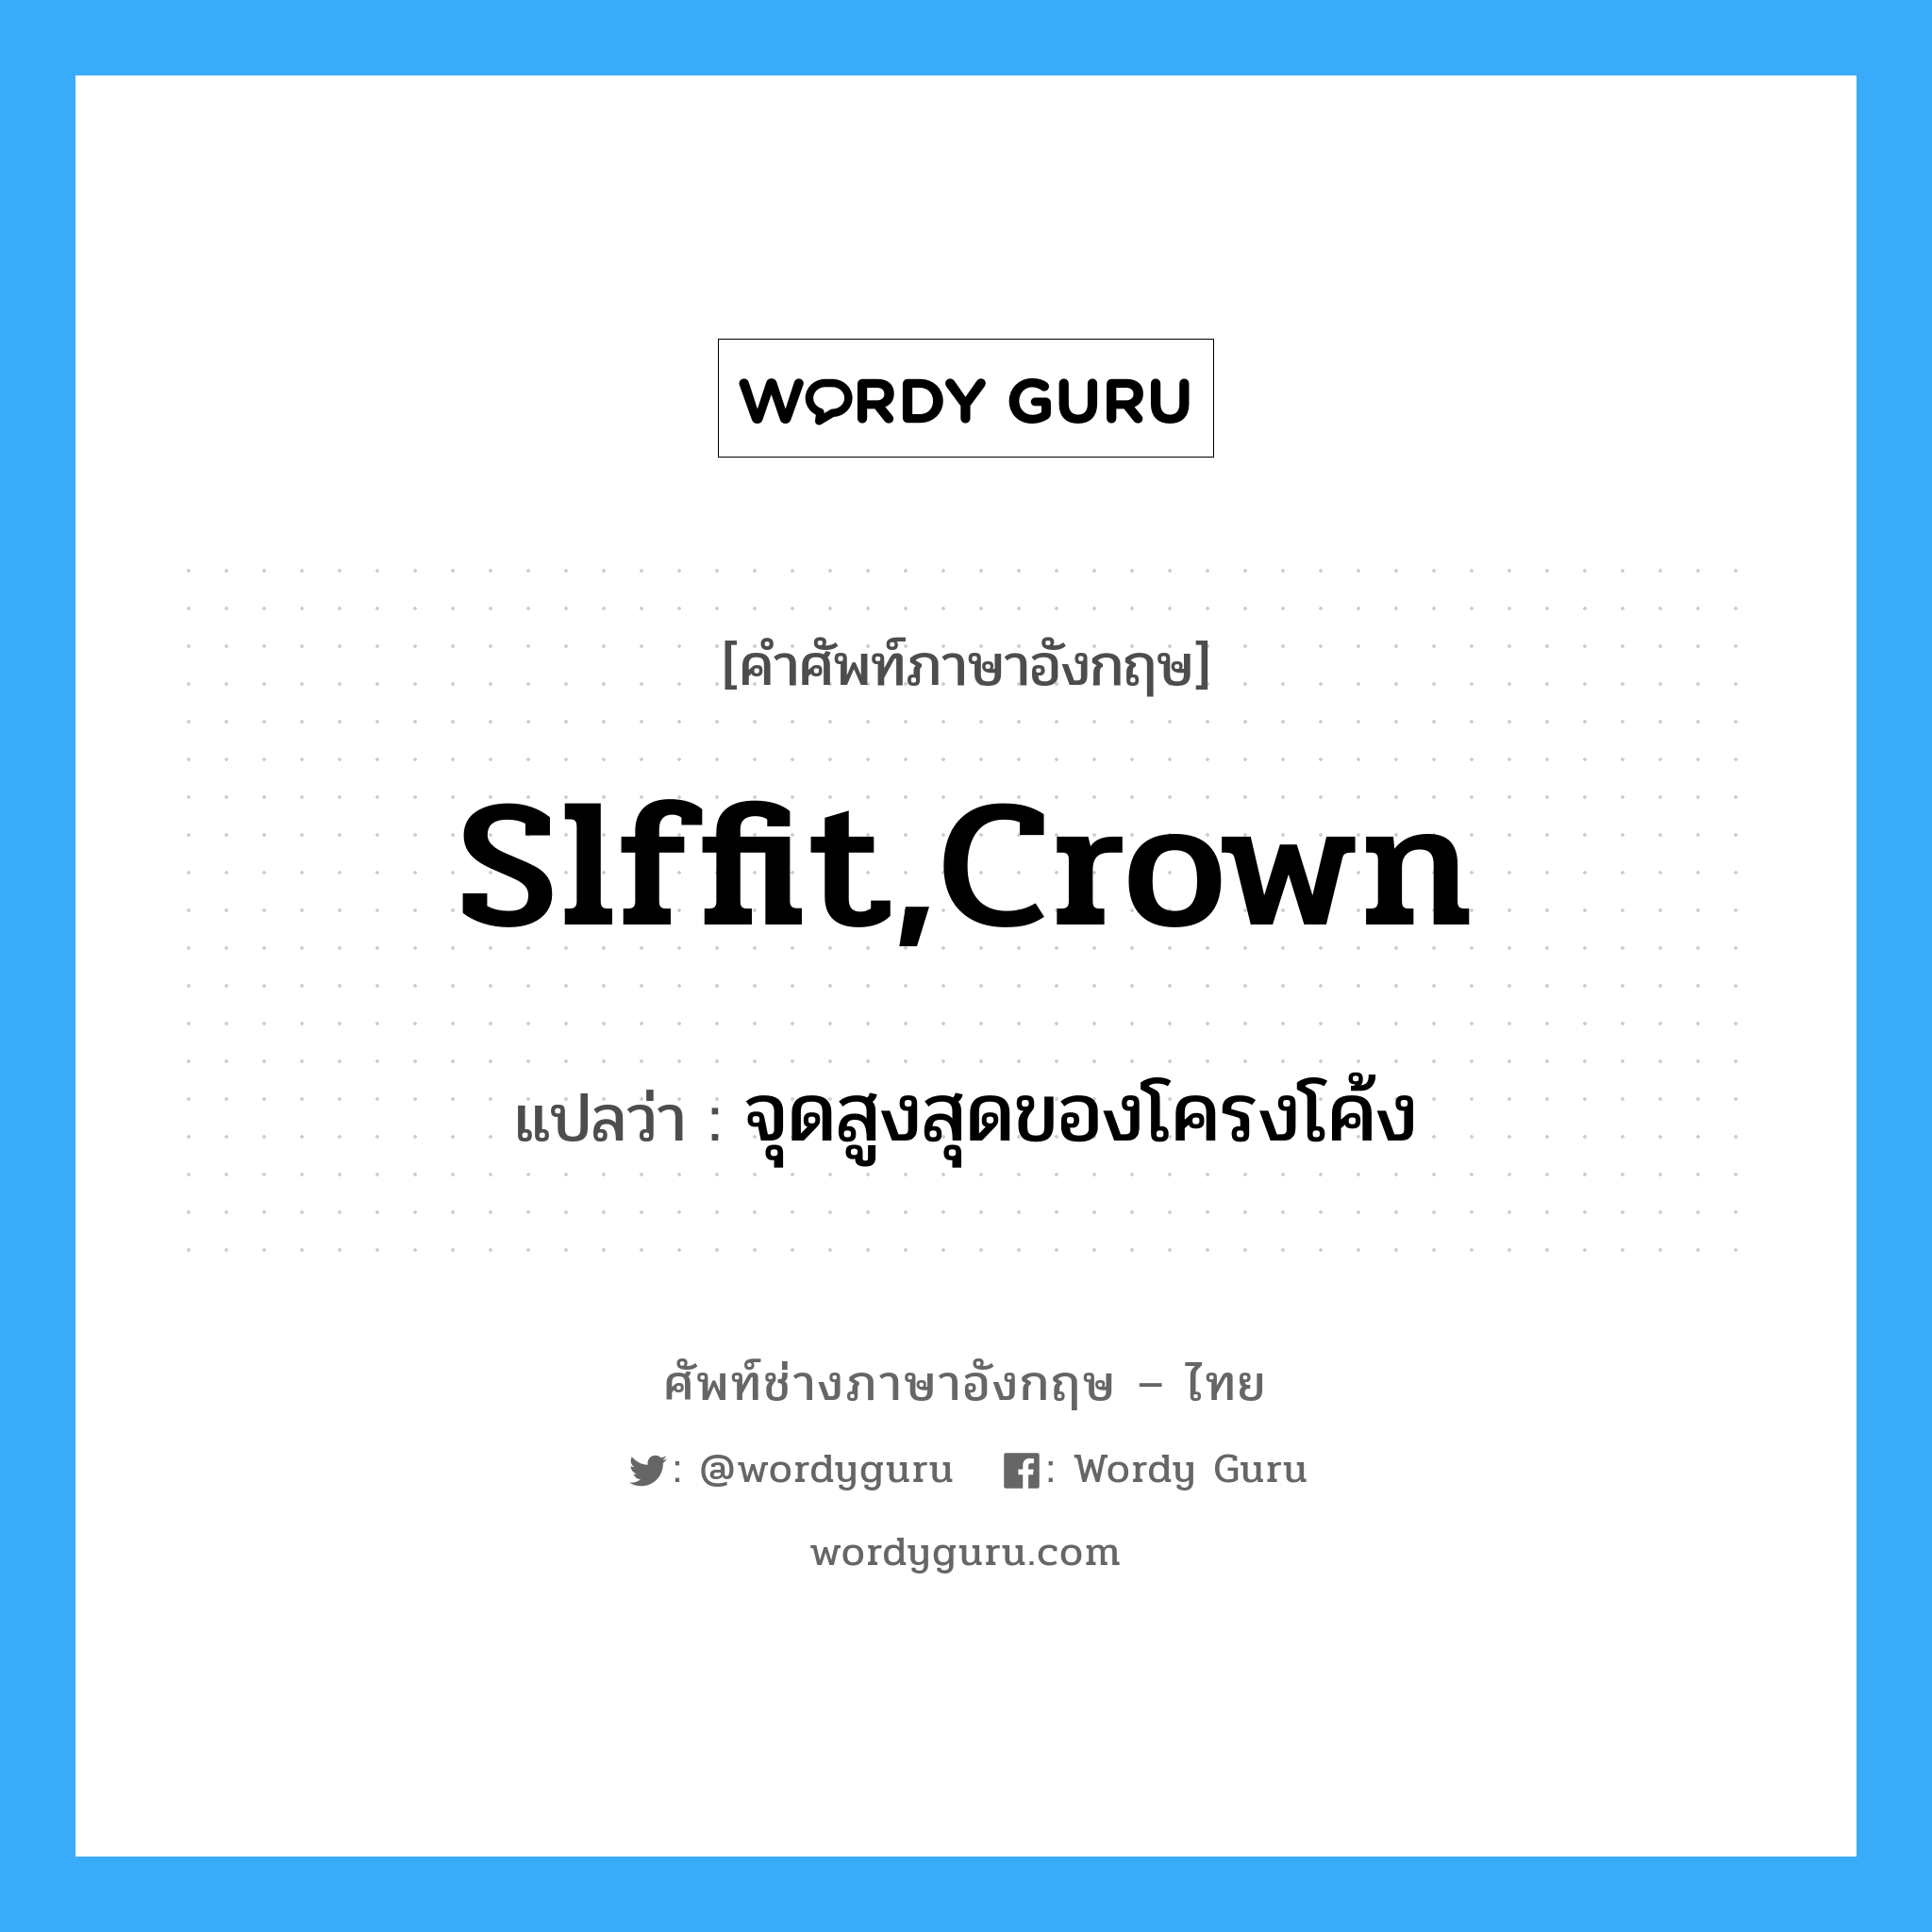 slffit,crown แปลว่า?, คำศัพท์ช่างภาษาอังกฤษ - ไทย slffit,crown คำศัพท์ภาษาอังกฤษ slffit,crown แปลว่า จุดสูงสุดของโครงโค้ง